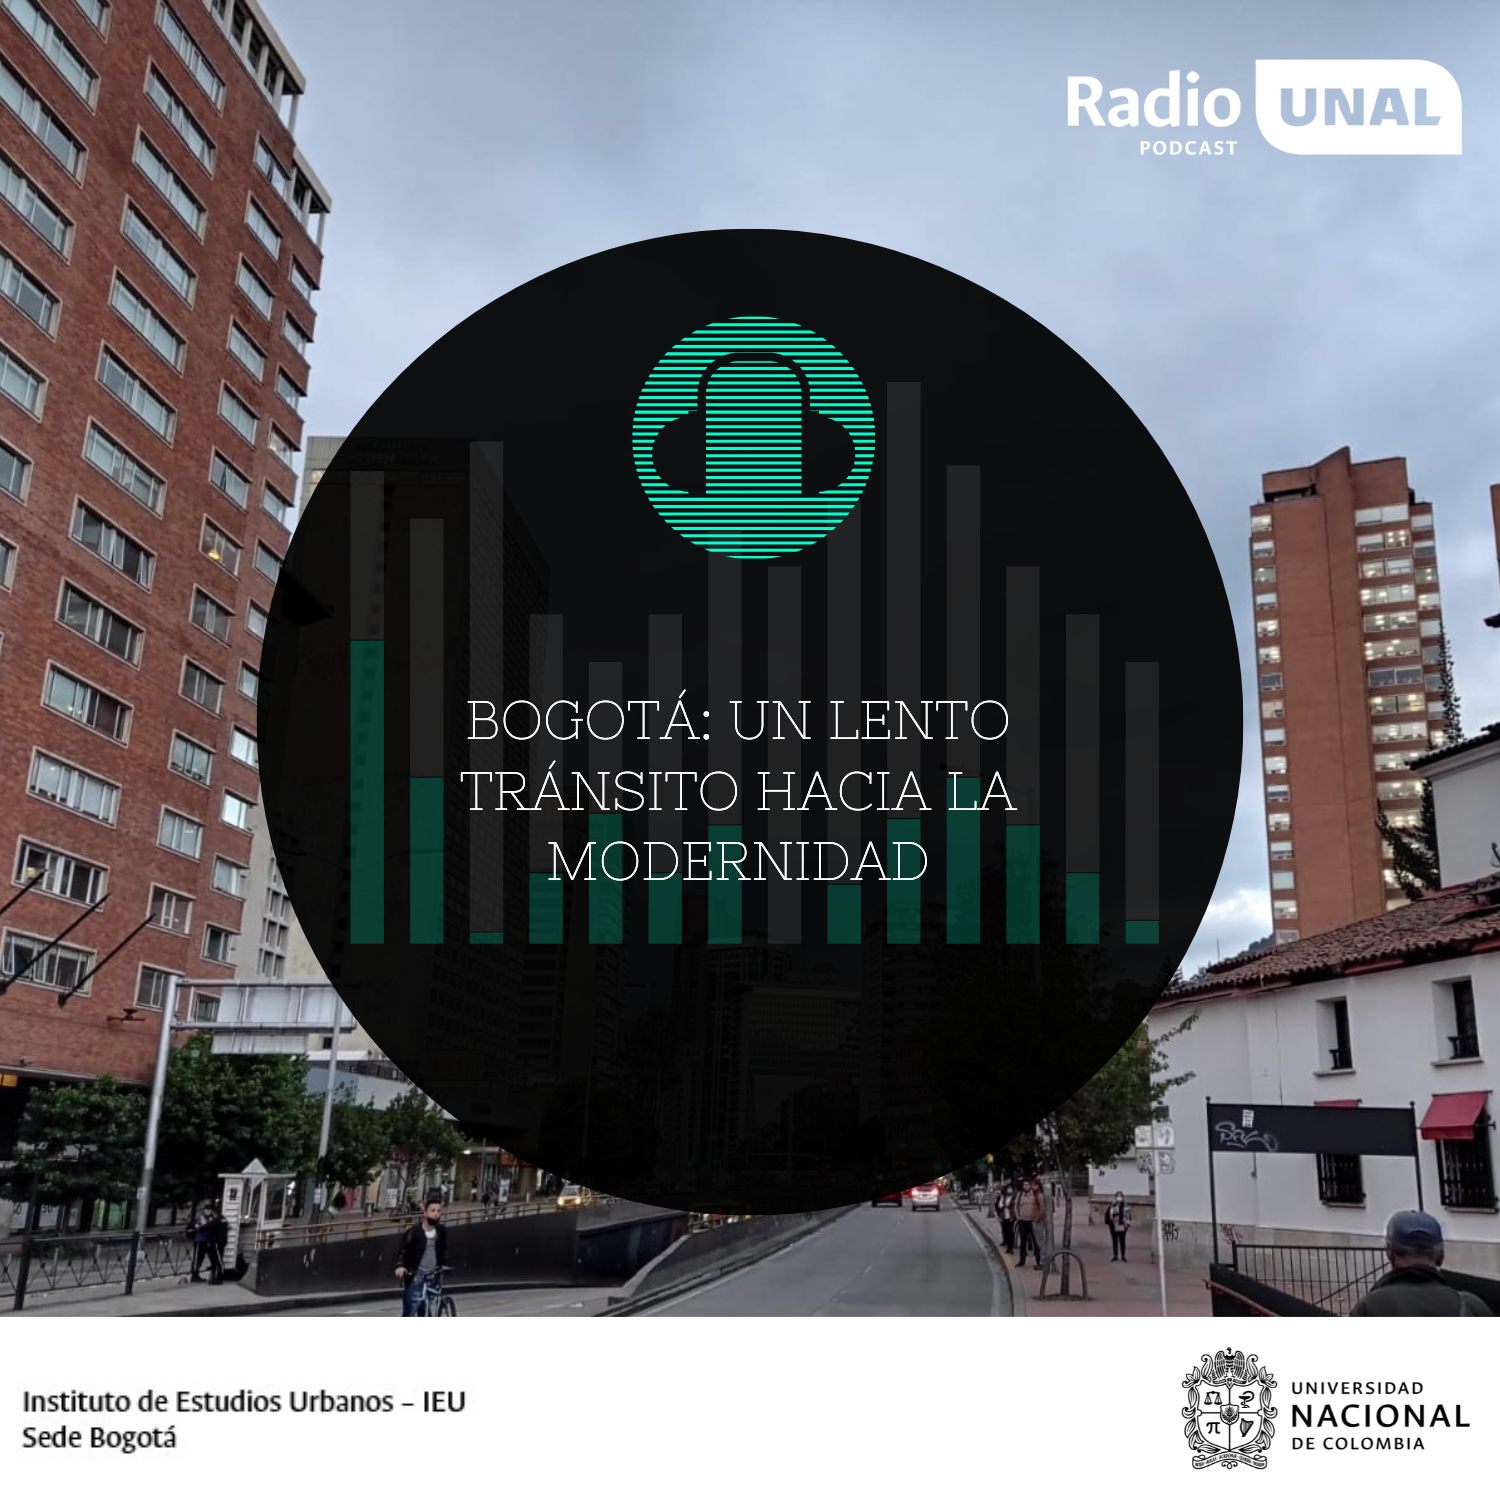 #PodcastRadioUNAL  Bogotá: un lento tránsito hacia la modernidad